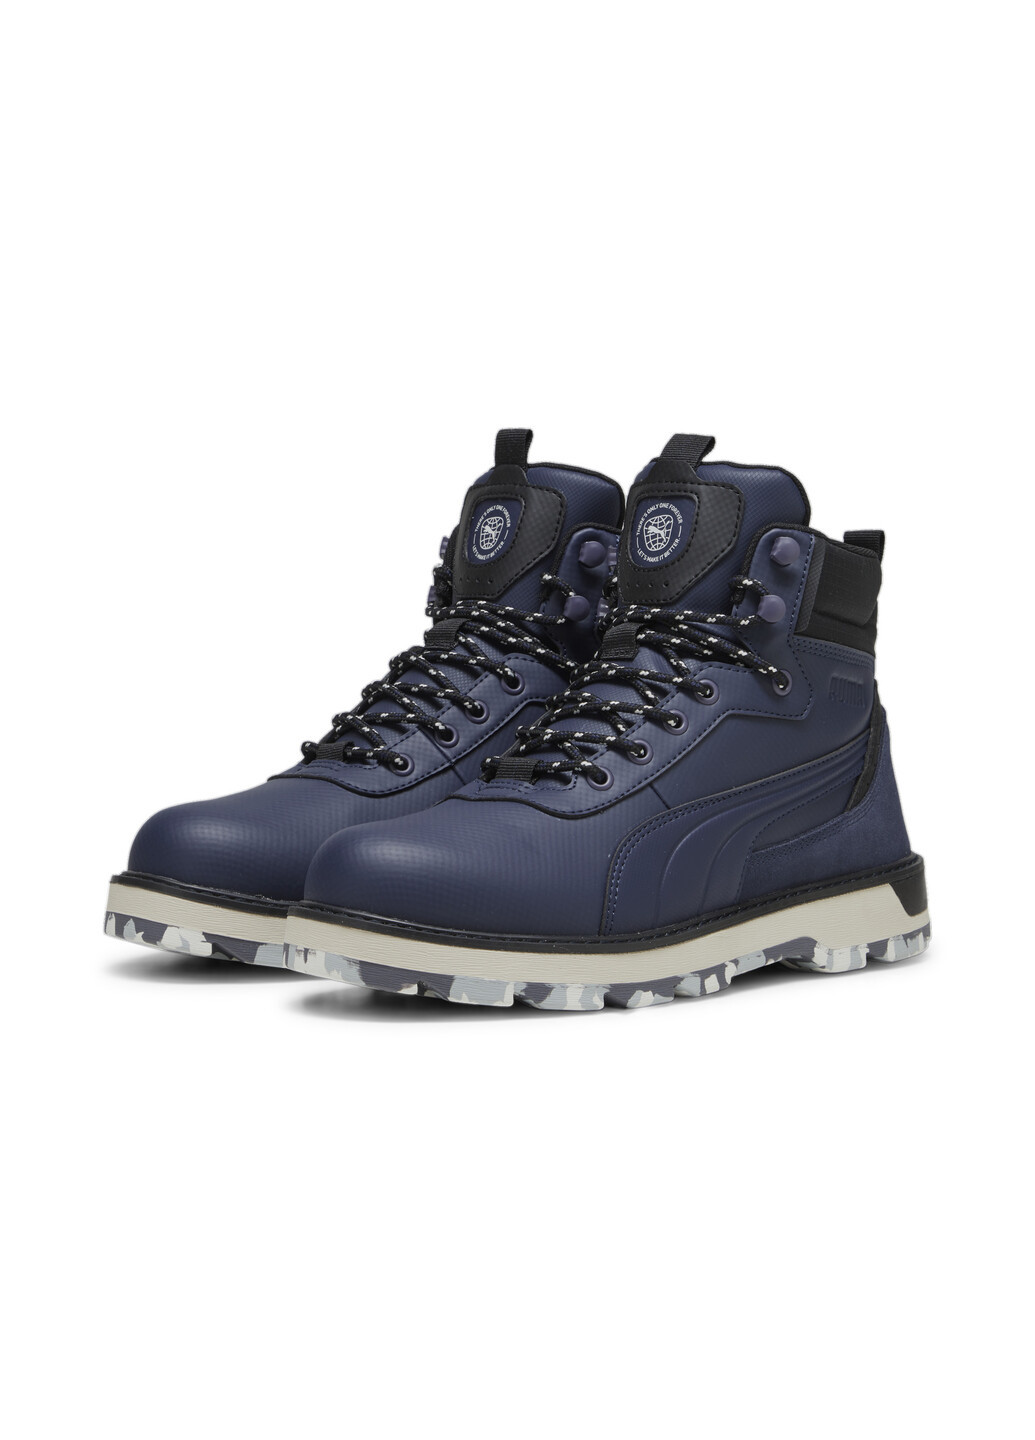 Синие зимние ботинки desierto v3 better boots Puma